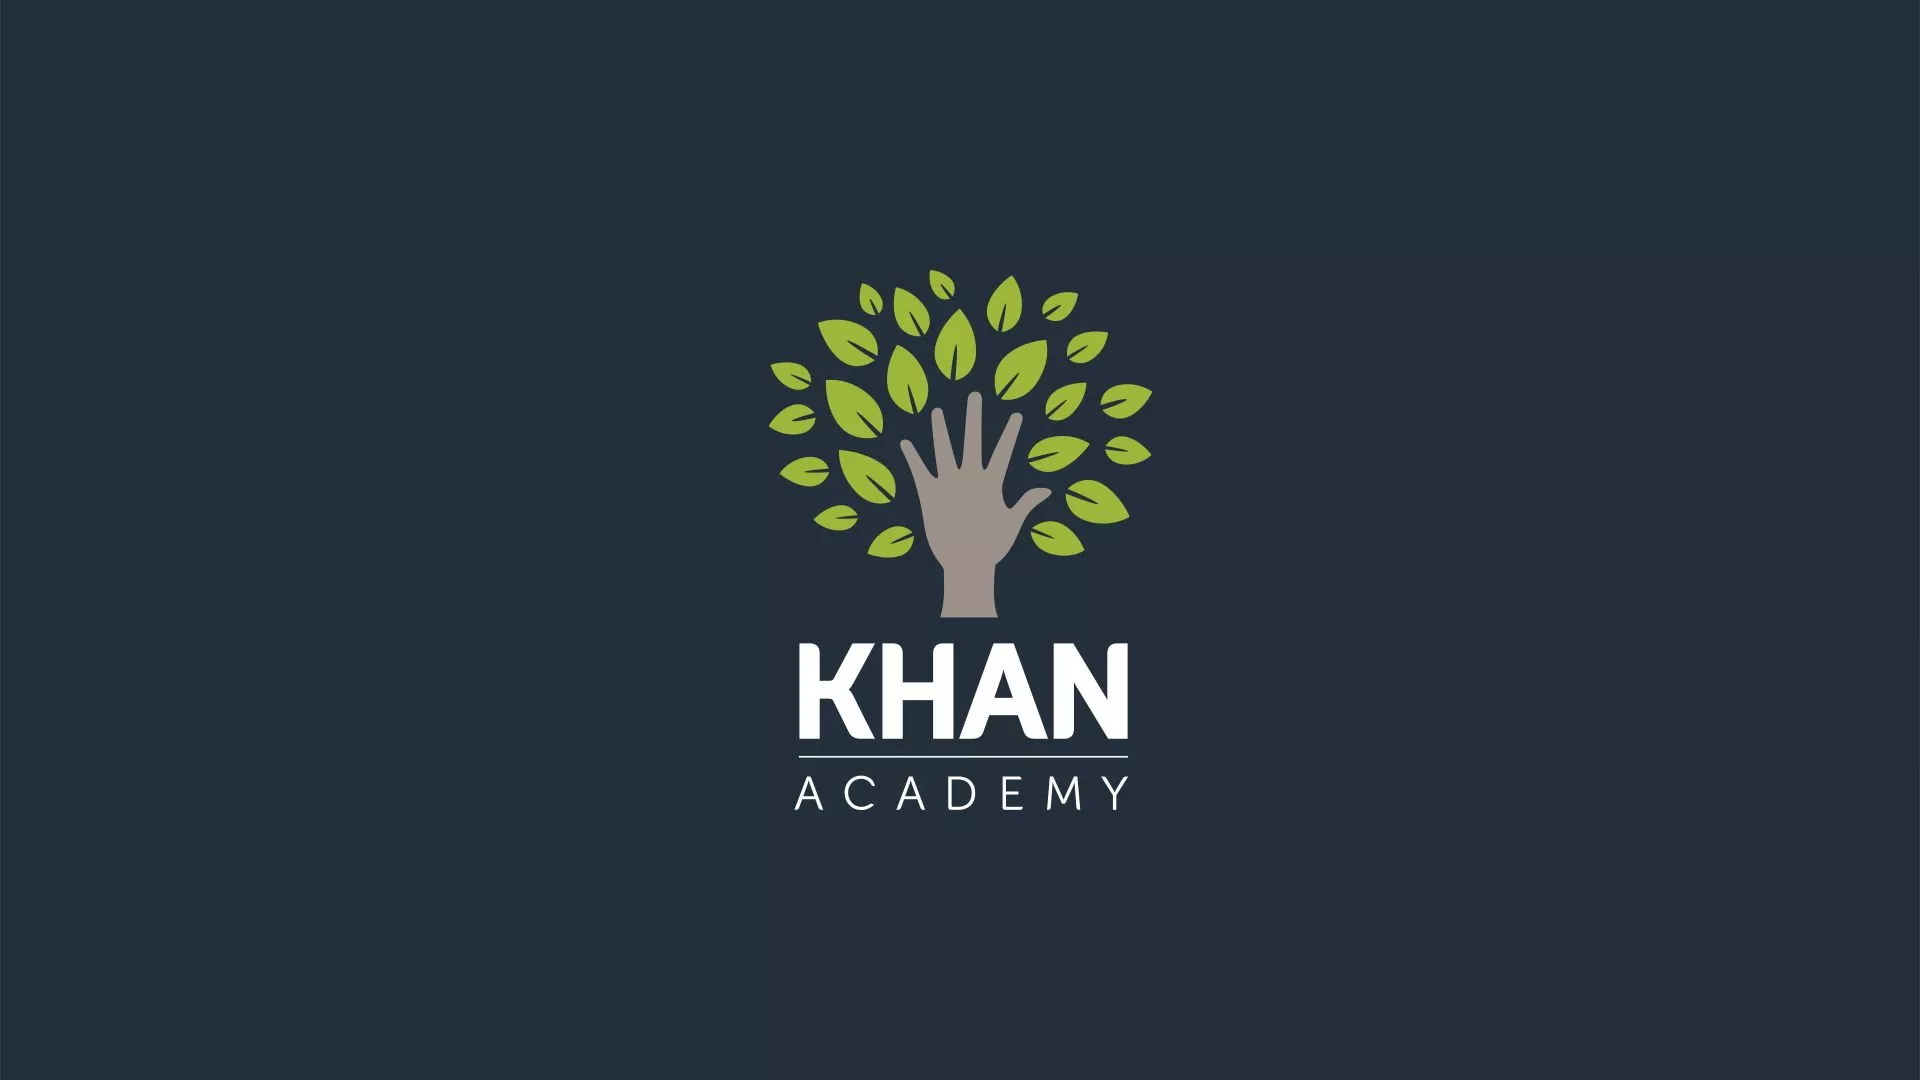 Logo Khan Academy